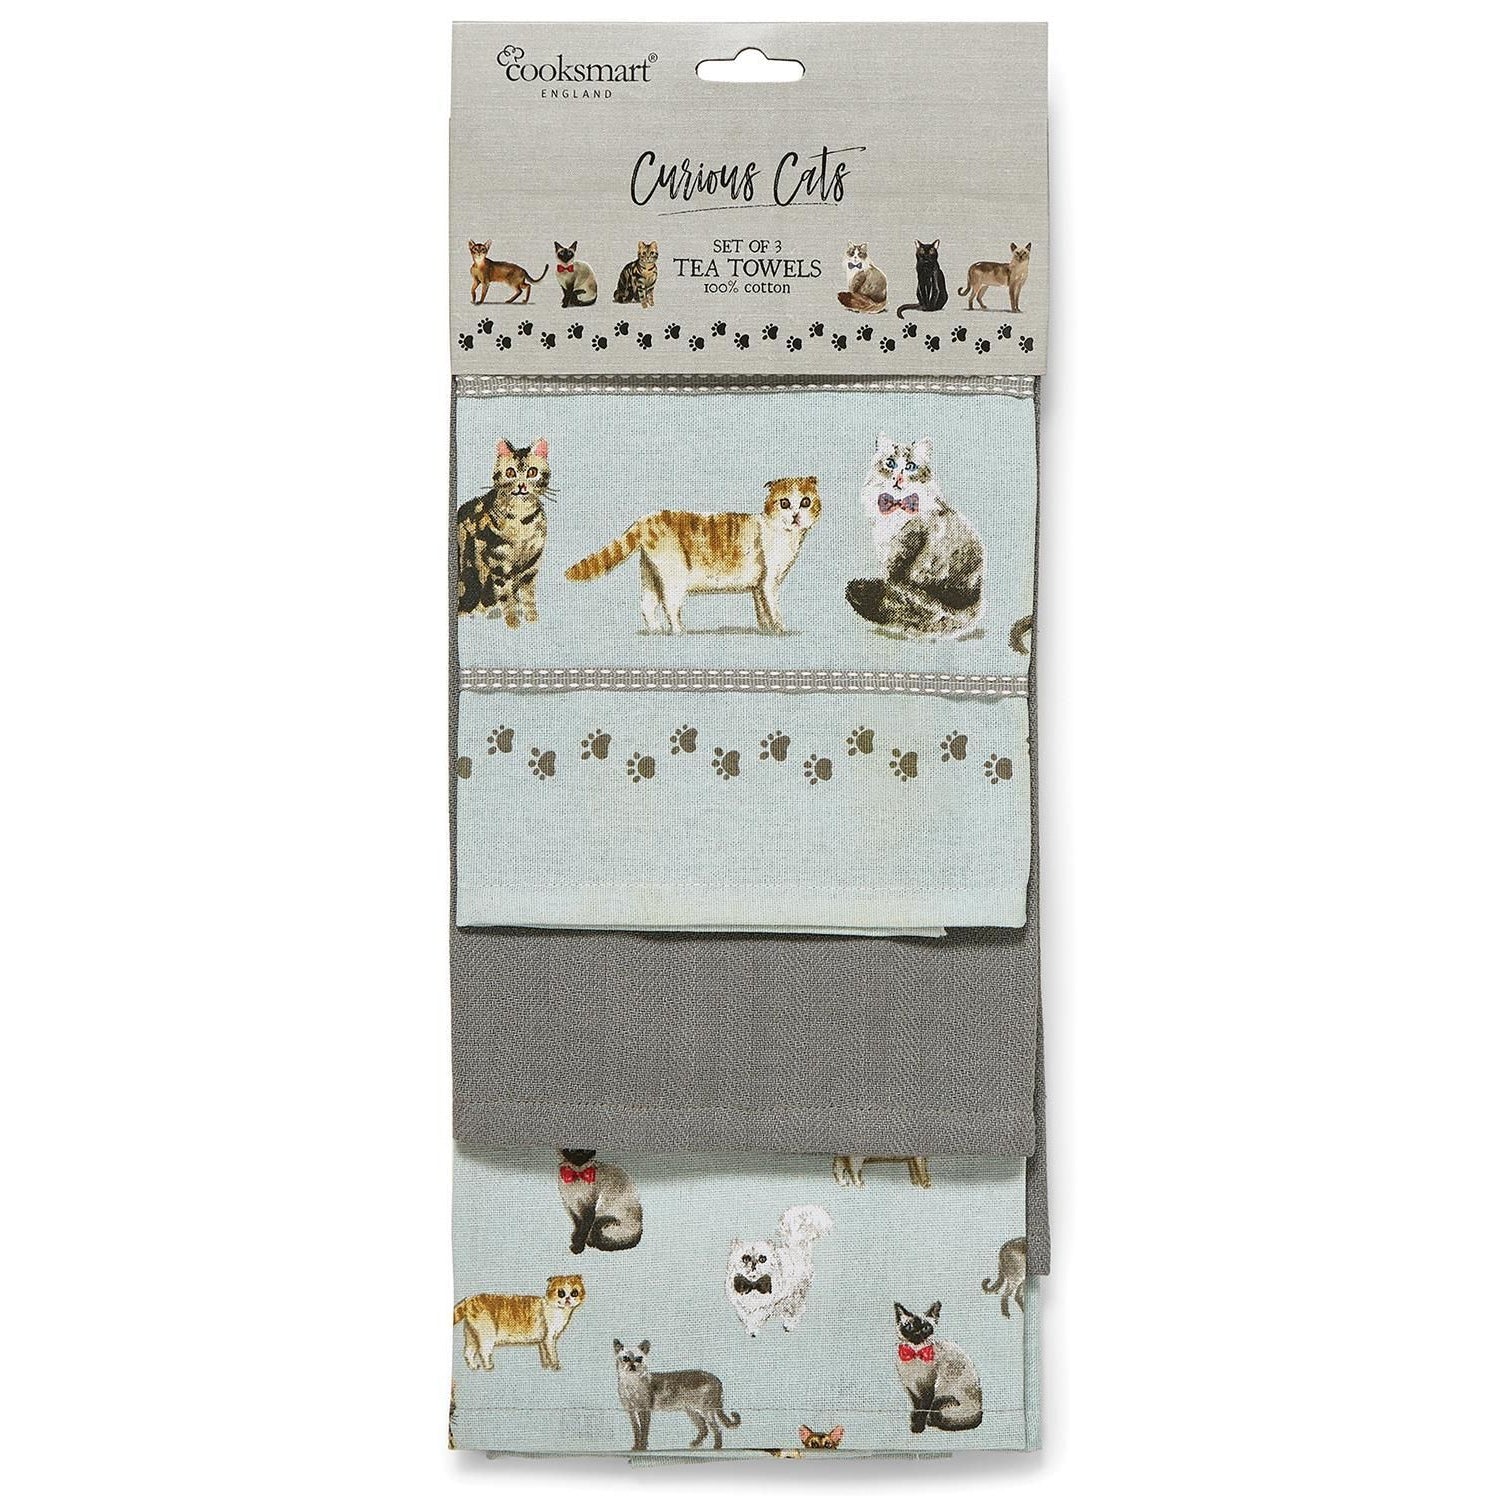 Curious Cats Tea Towels pack 3-Homeware-City Look-Thursford Enterprises Ltd.